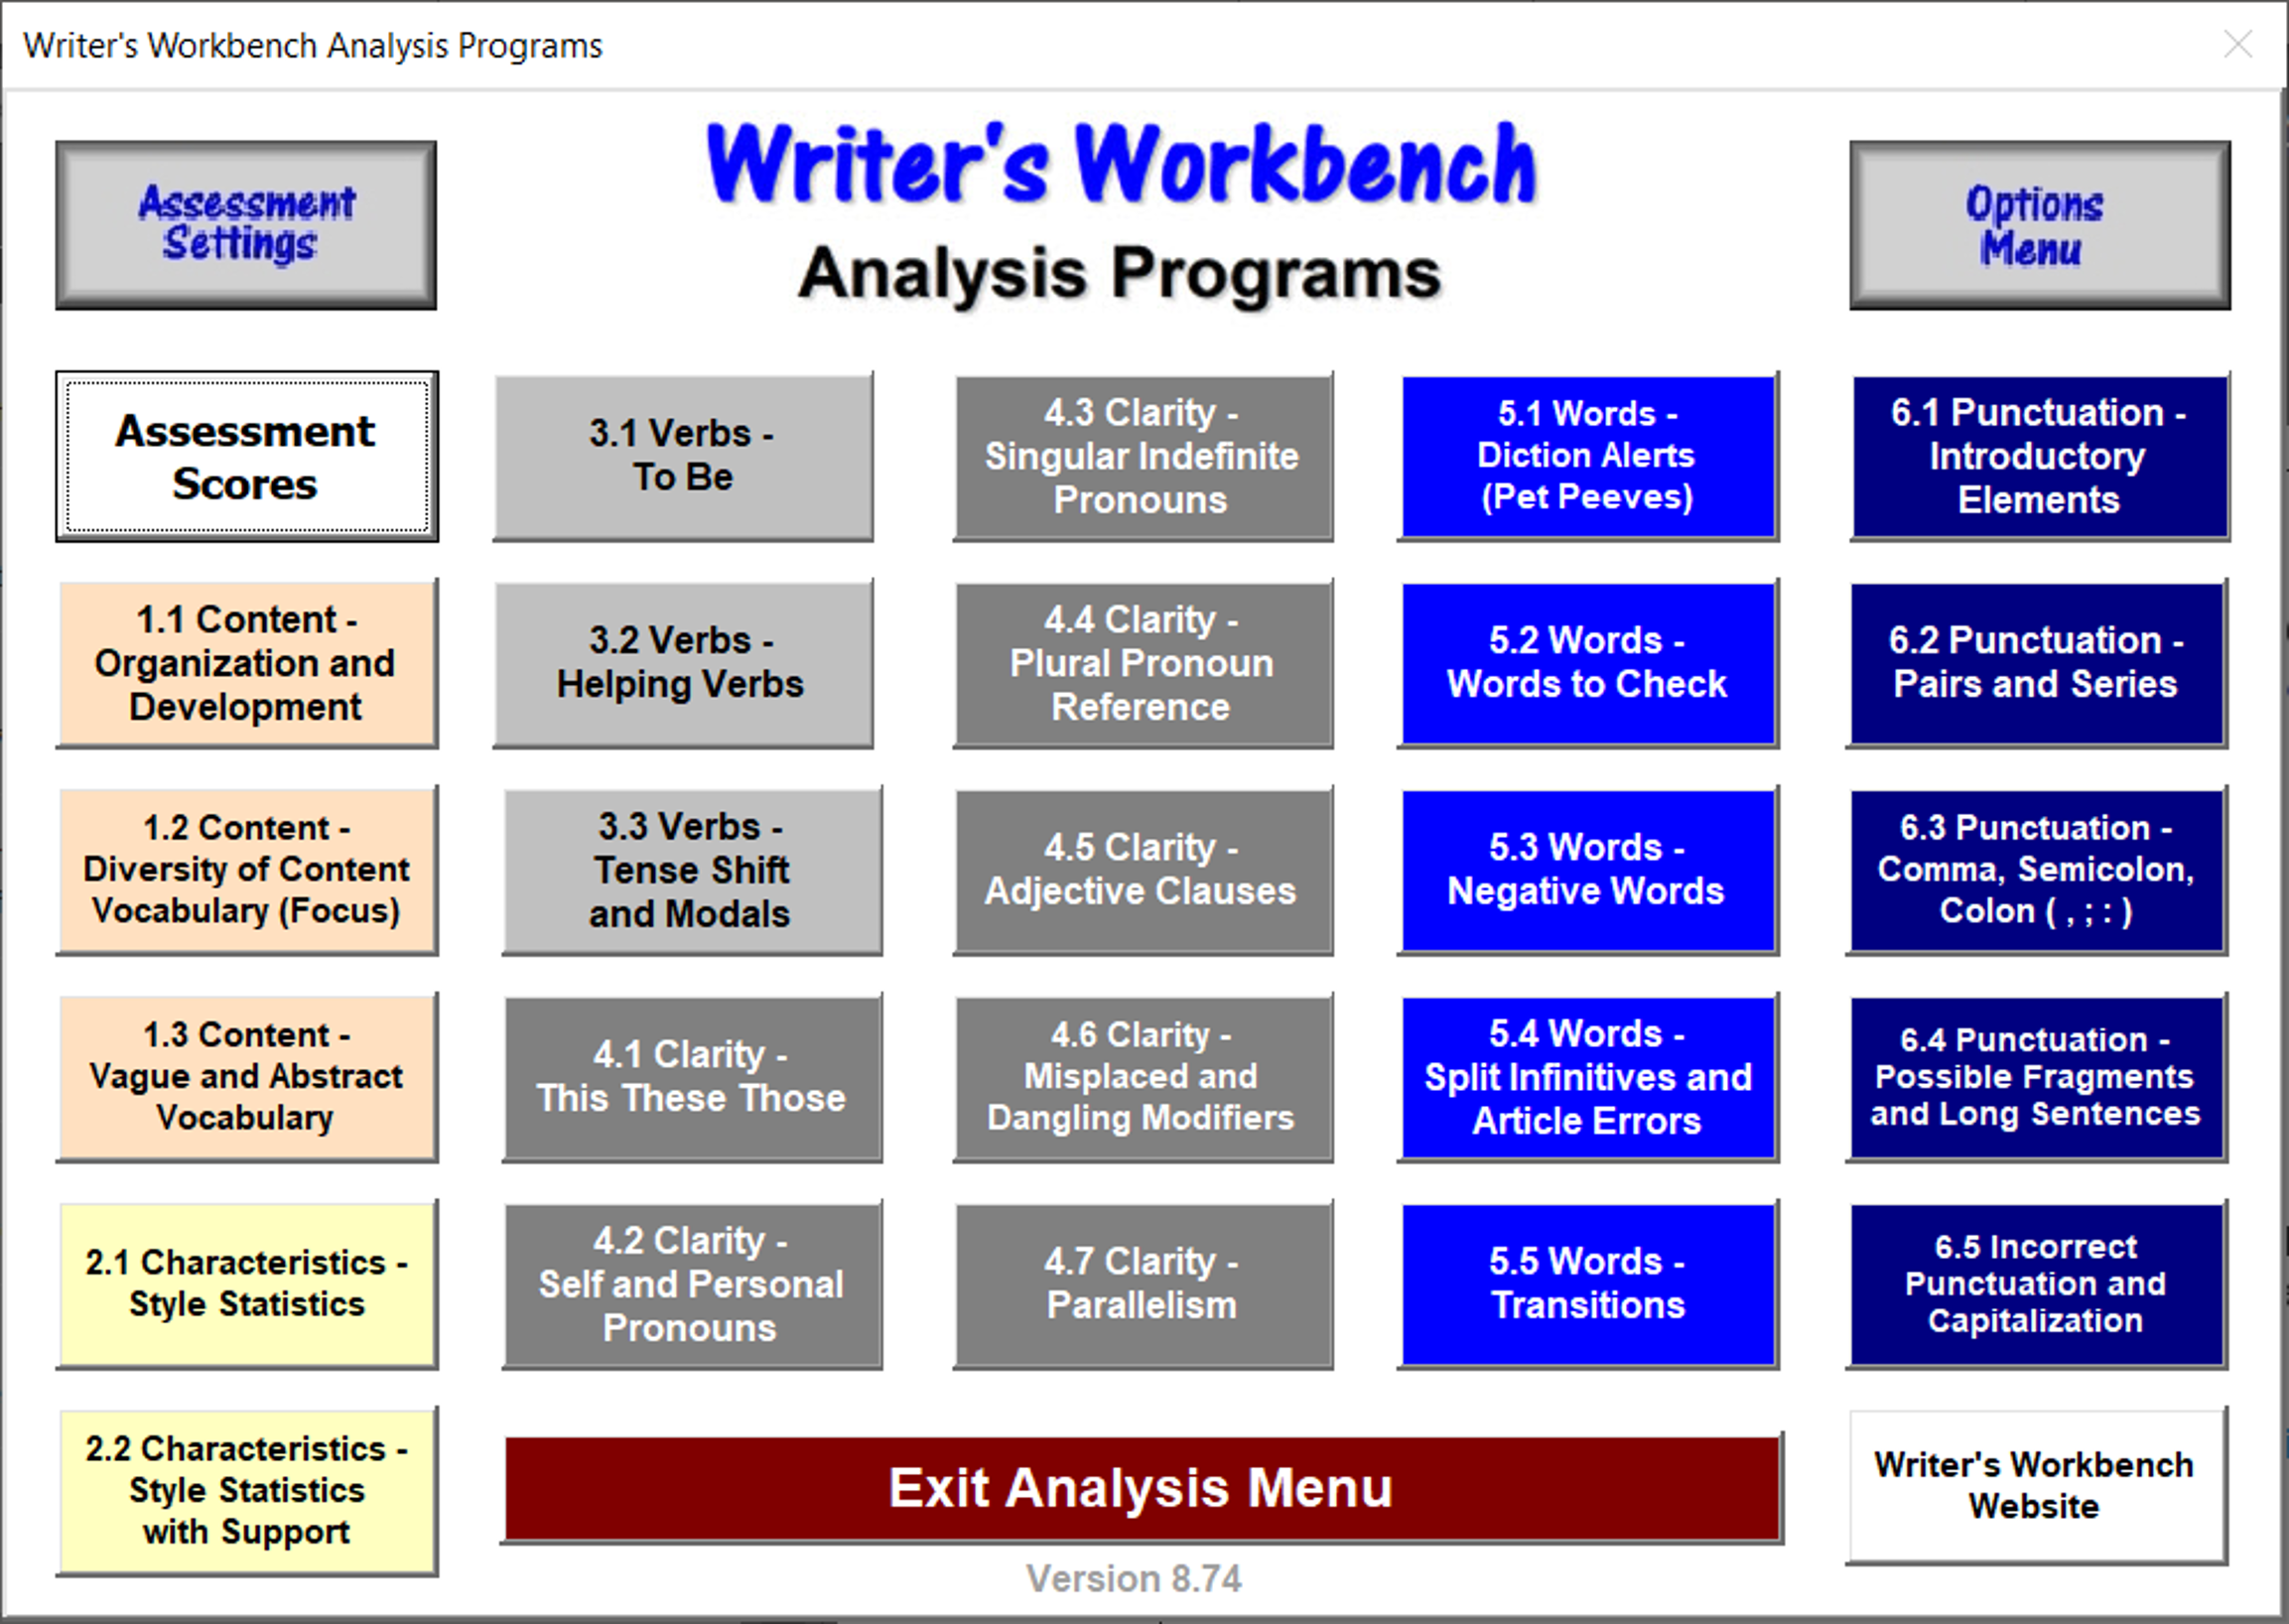 WWB Analysis Programs Menu